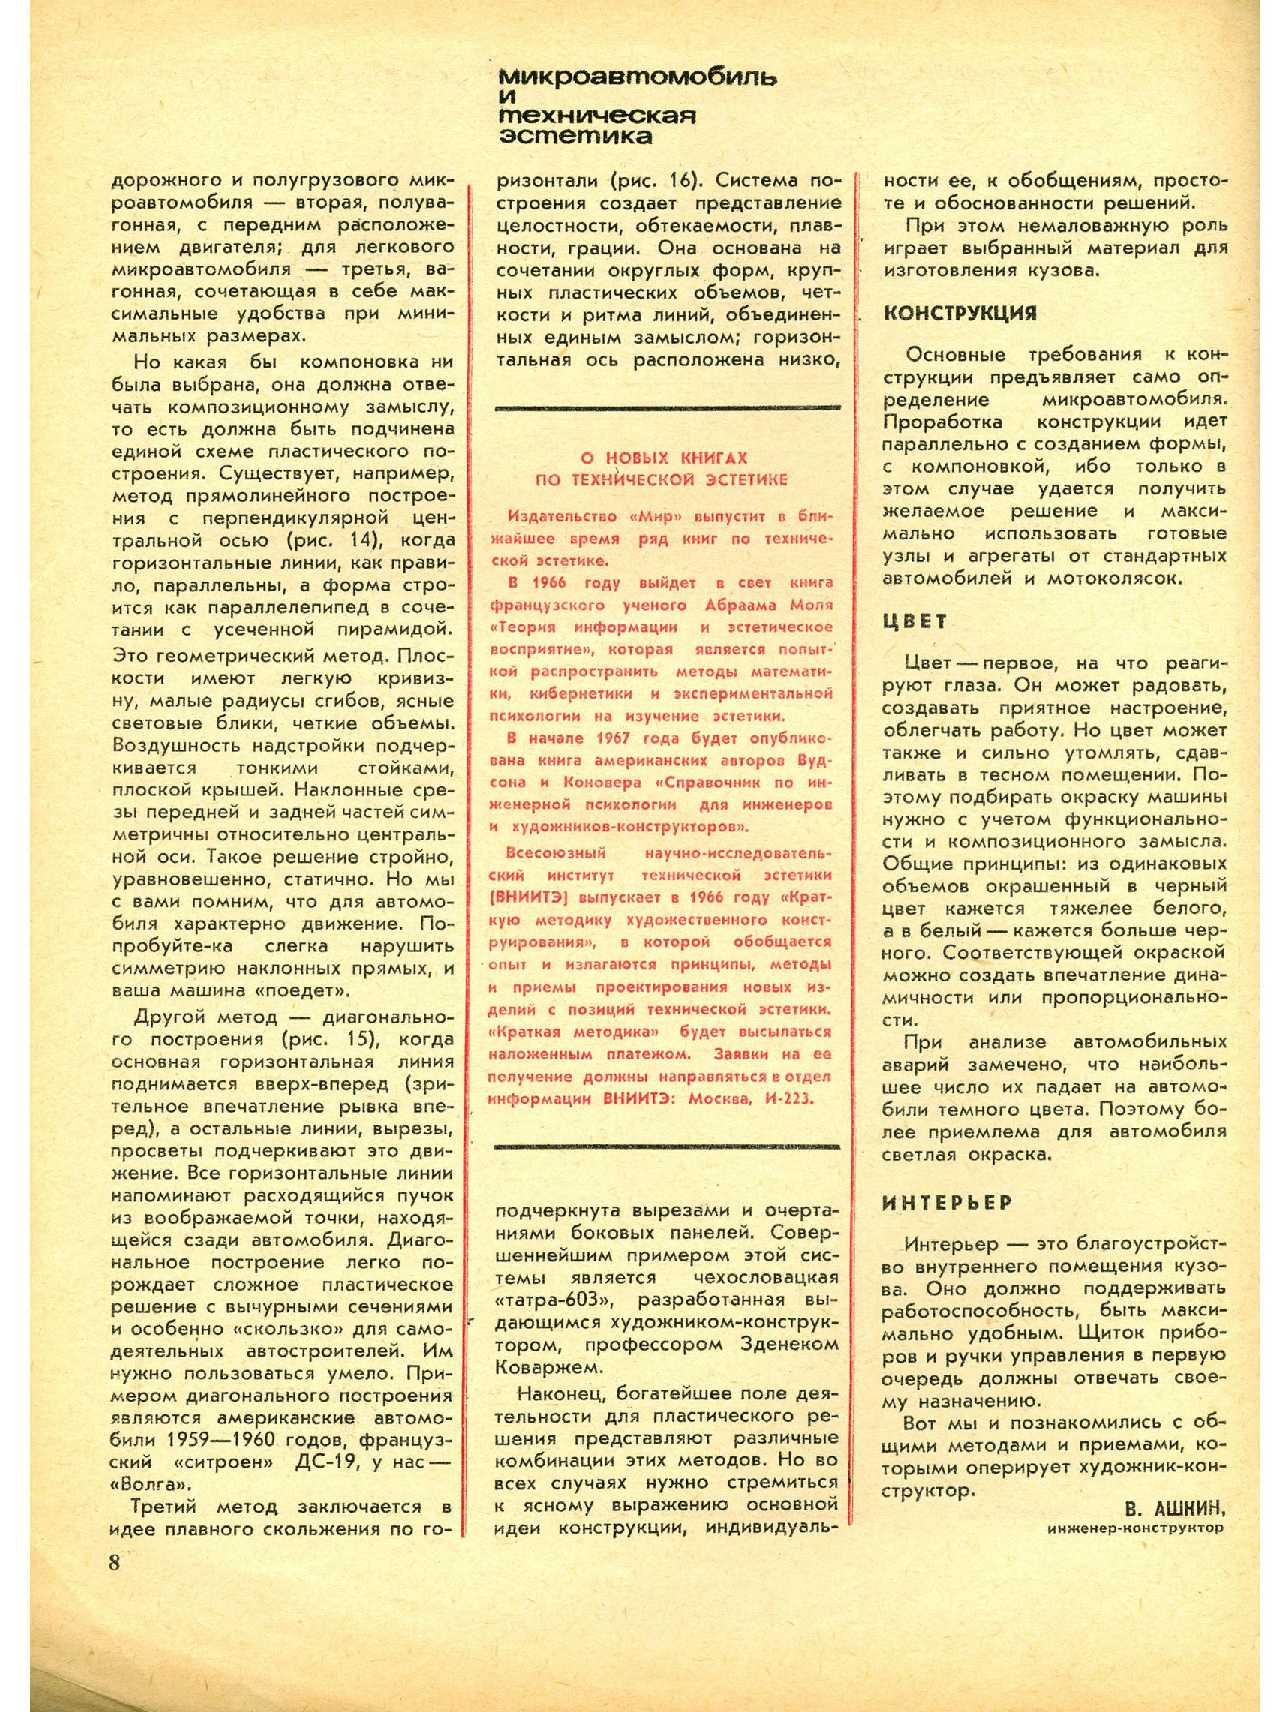 МК 7, 1966, 8 c.